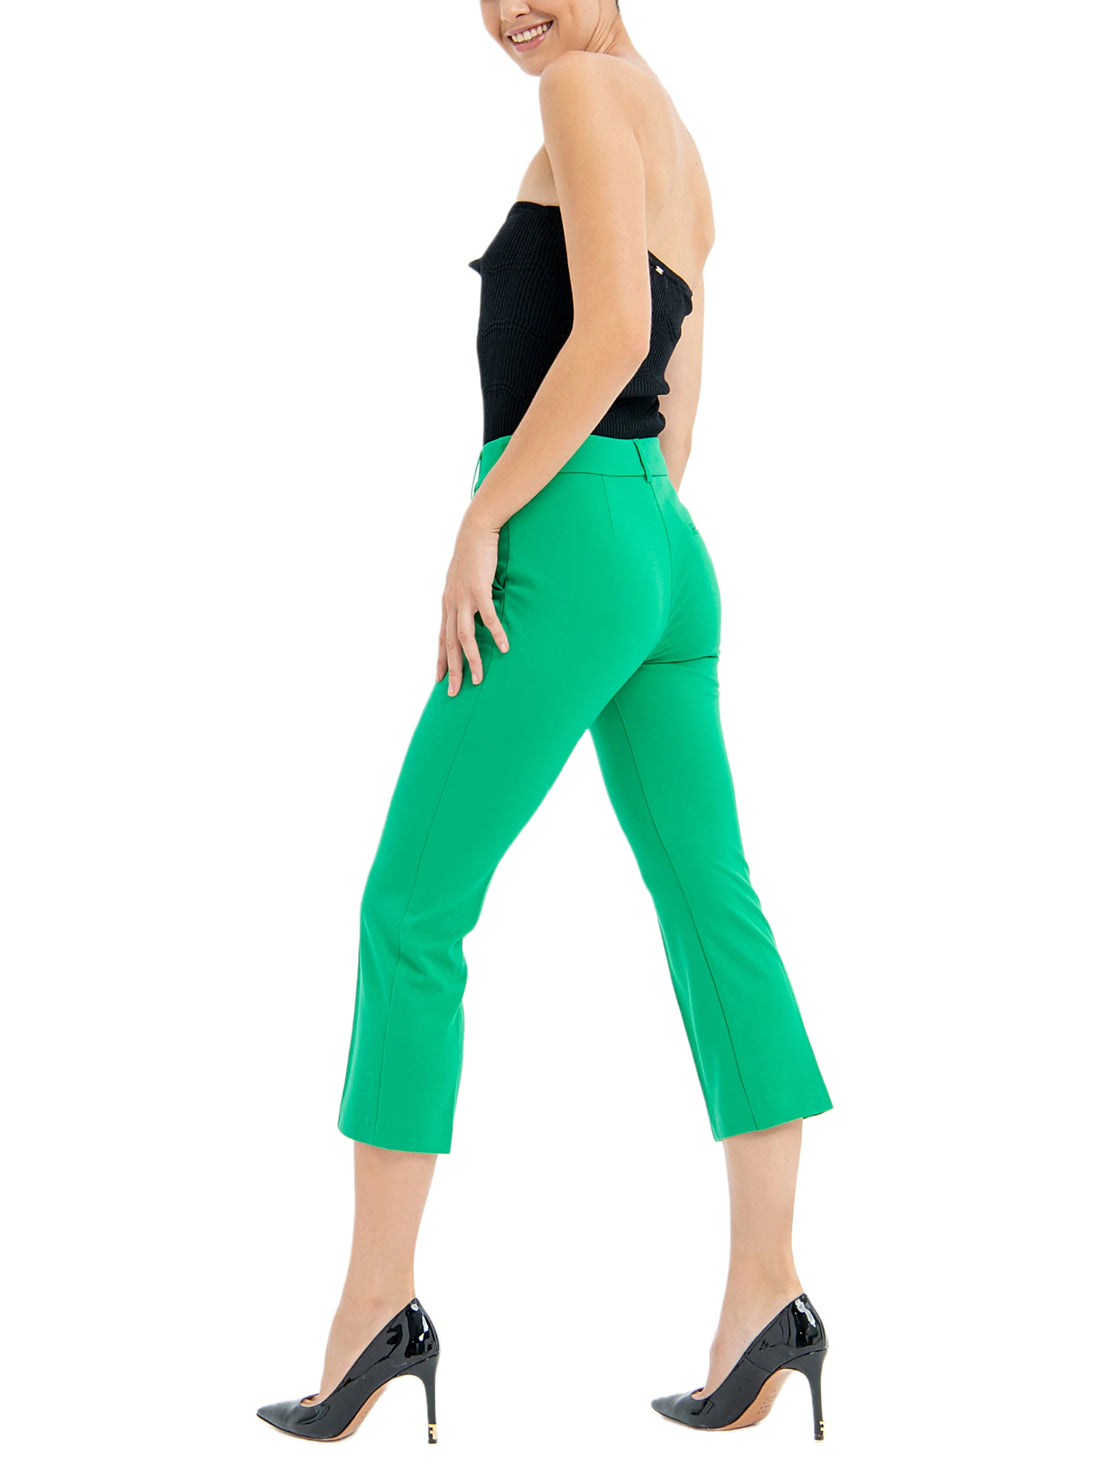 Pantaloni Verde Fracomina